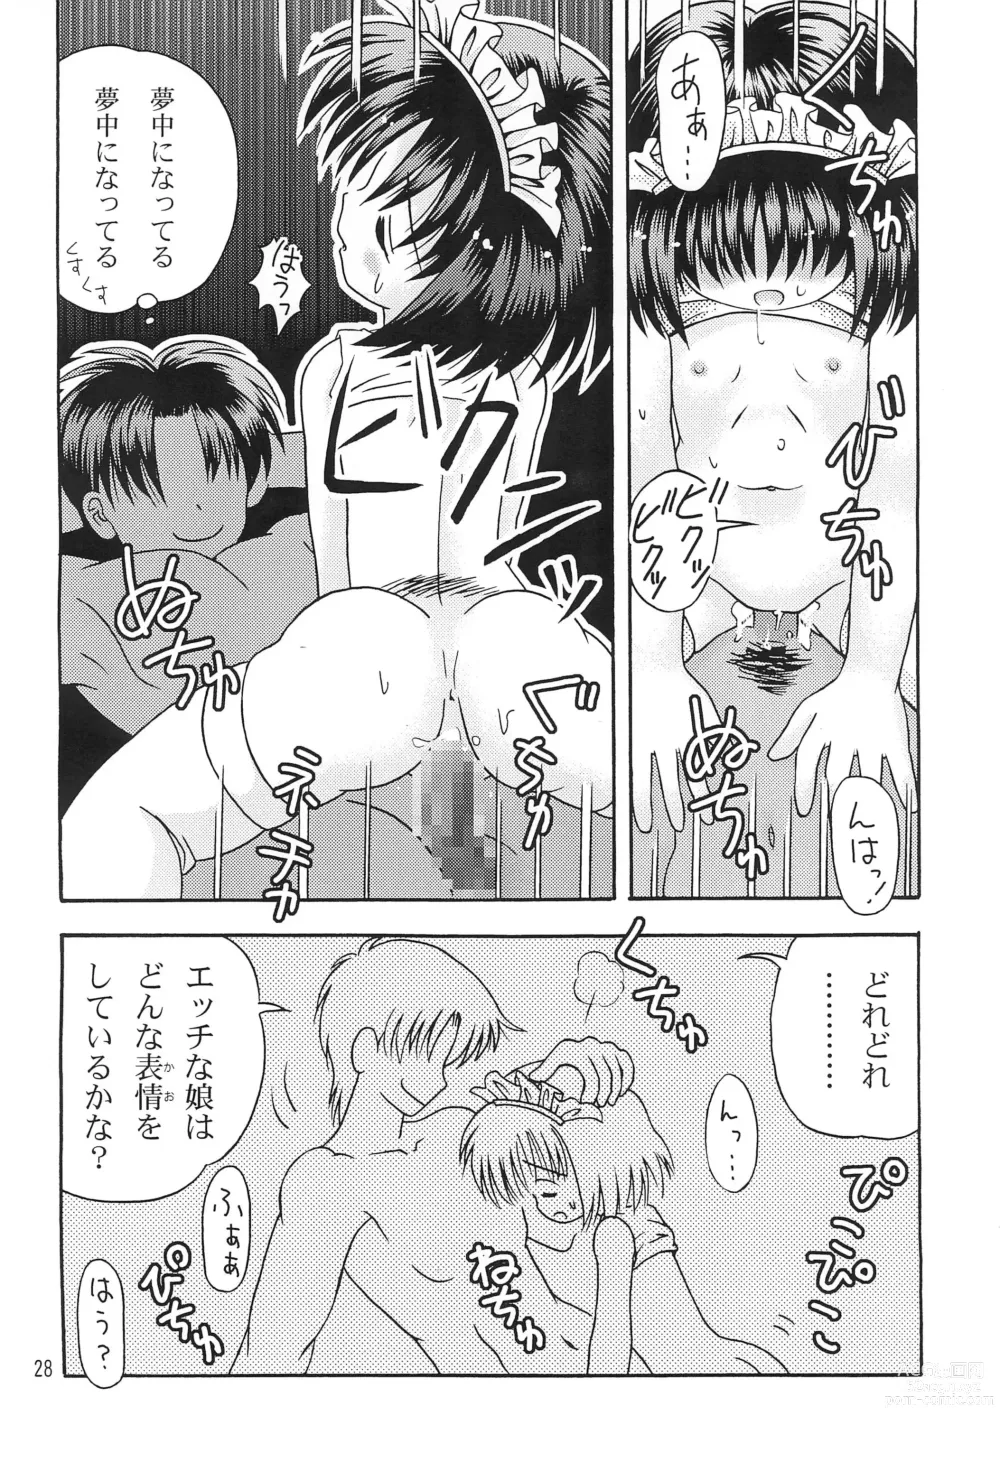 Page 30 of doujinshi Kokuin -Chouai-